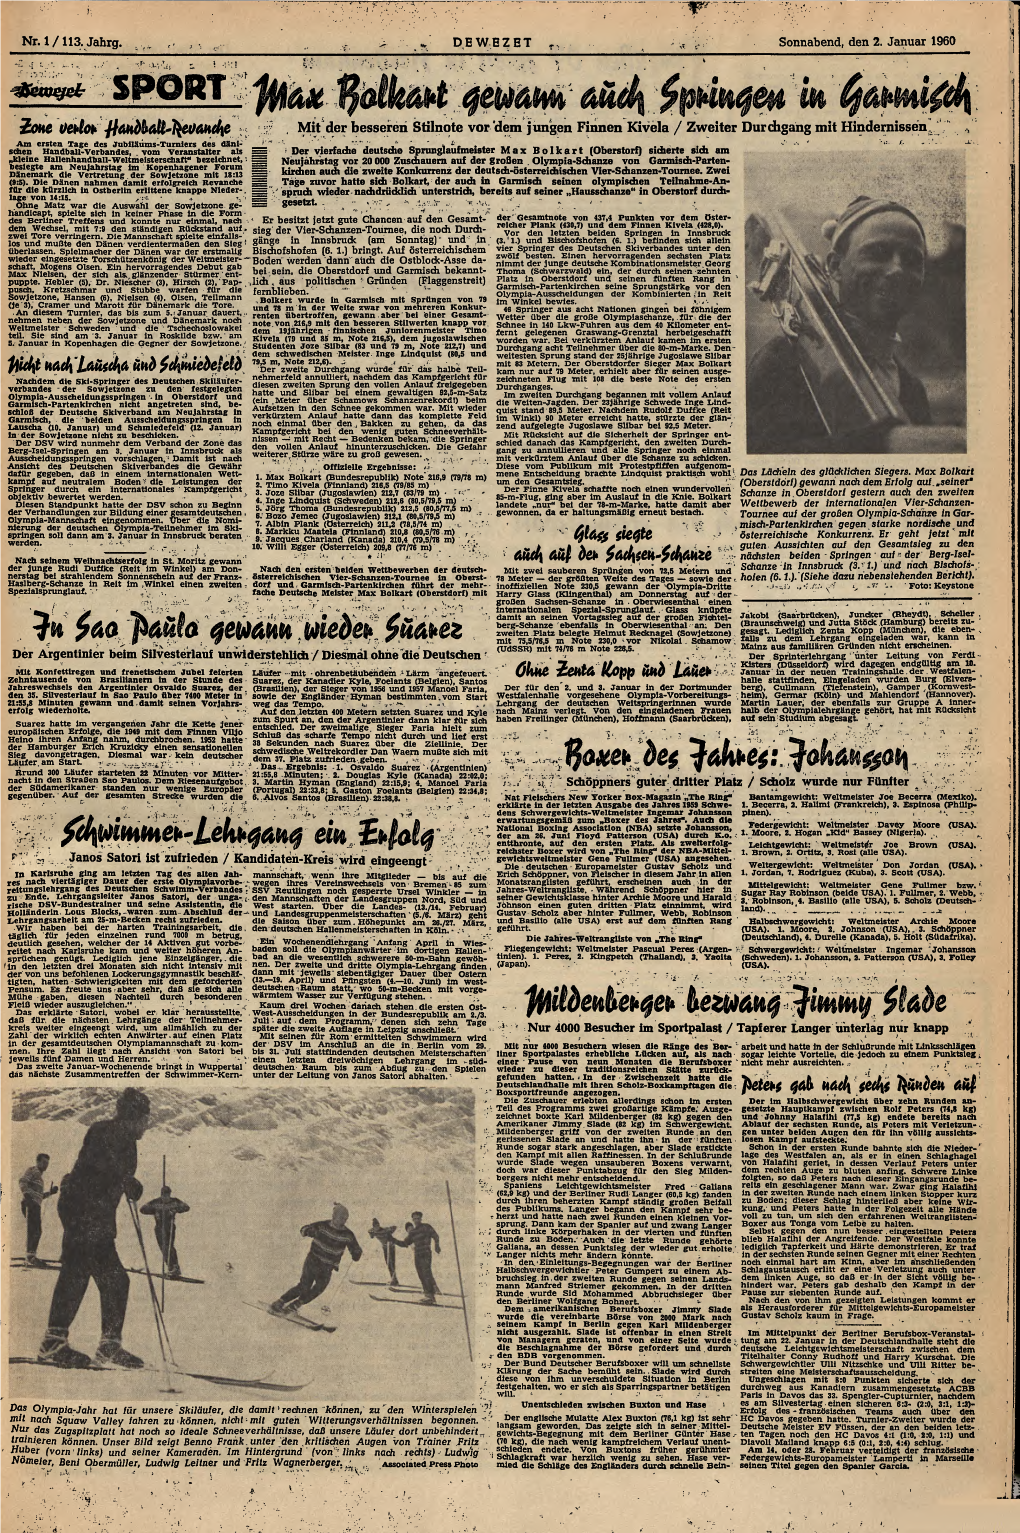 Nr. 1/113. Jahrg. DE WEZET Sonnabend, Den 2. Januar 1960